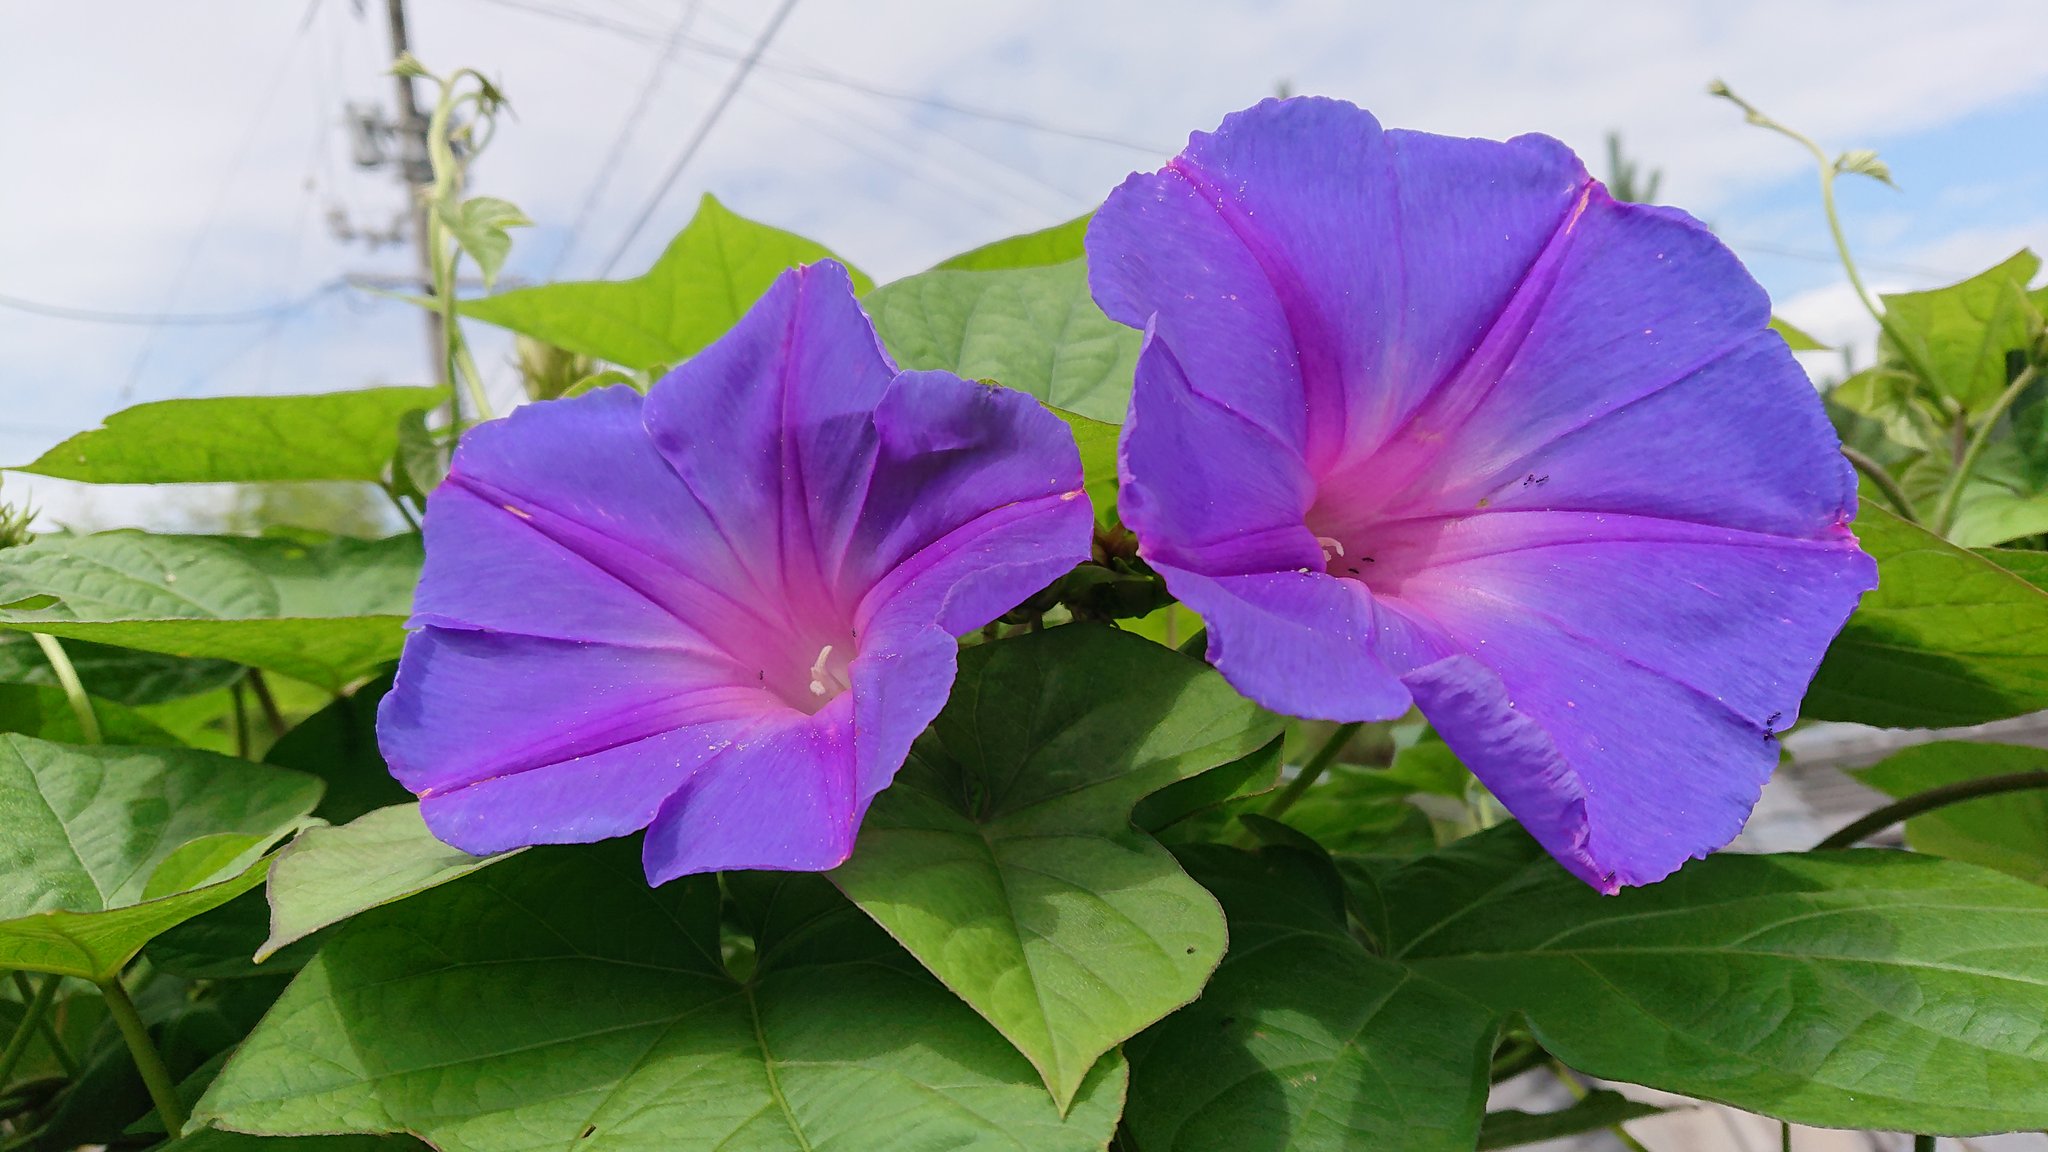 Satochan 琉球朝顔 オーシャンブルー ノアサガオ 6 11月 沖縄の海のように美しく 青色の朝顔を咲かせる 普通の アサガオとは違い 生命力があり たくさん茂ります 葉も大きくハート型をしている 早朝は青色で 午後は紫色に変化して夕方まで咲く